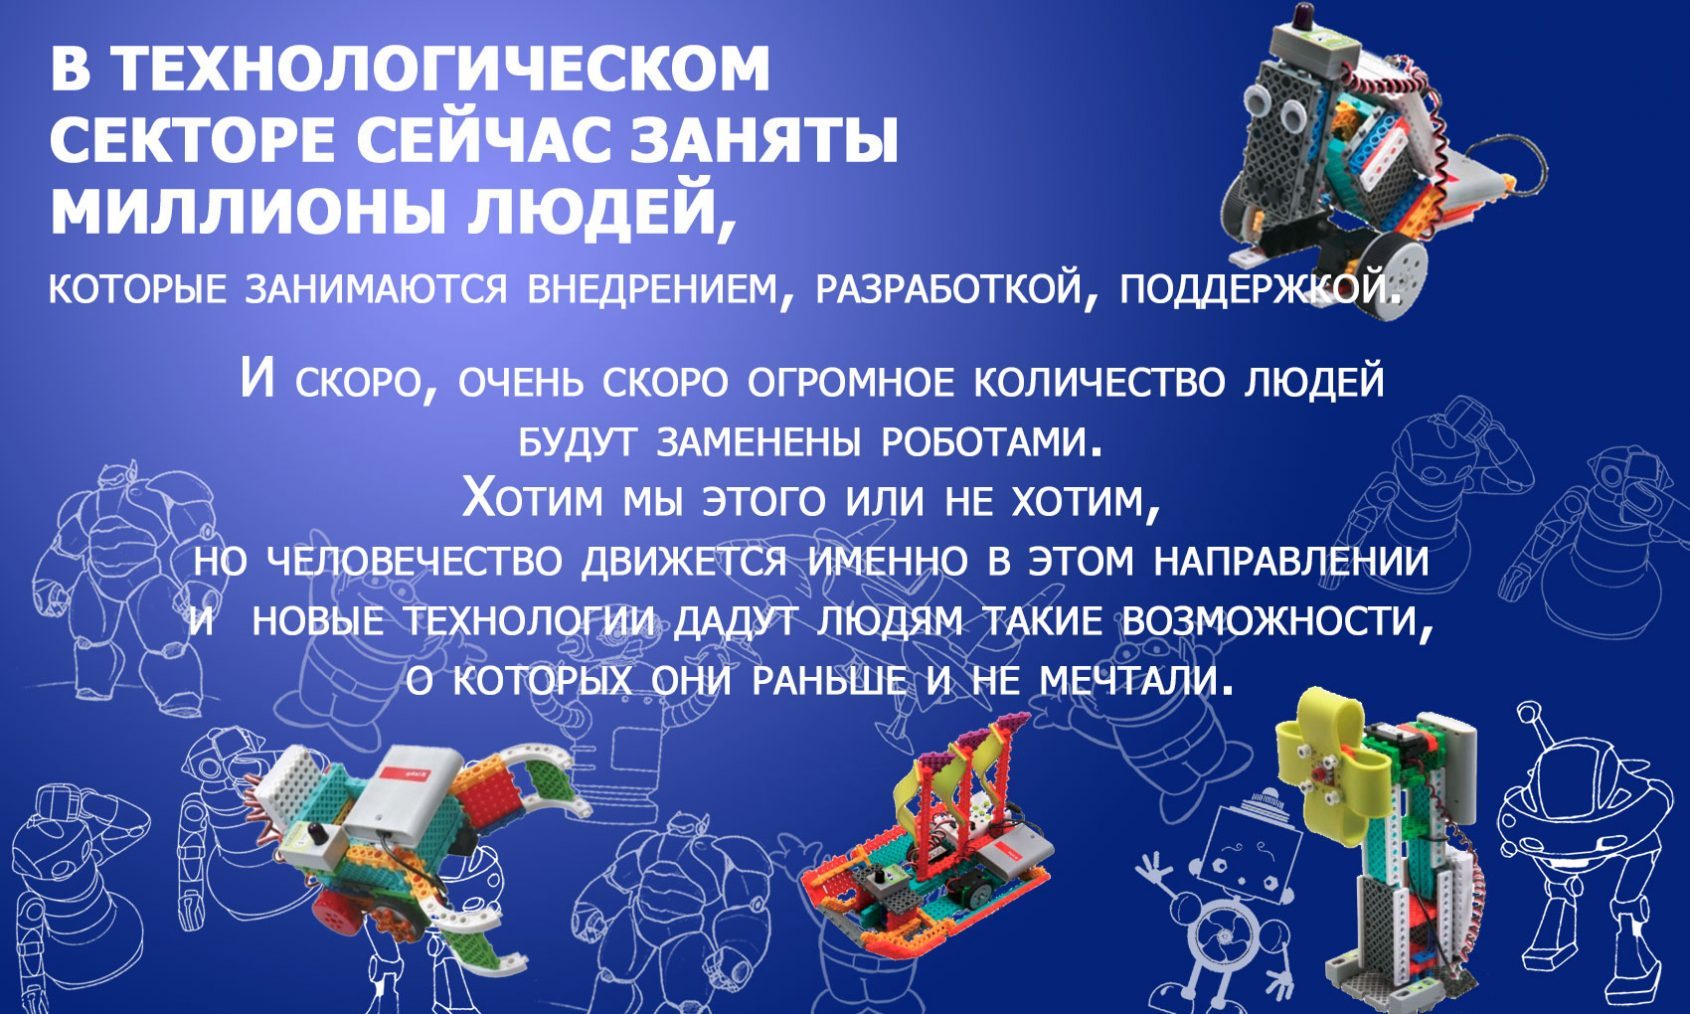 Кружок робототехники для детей в Бирюлево